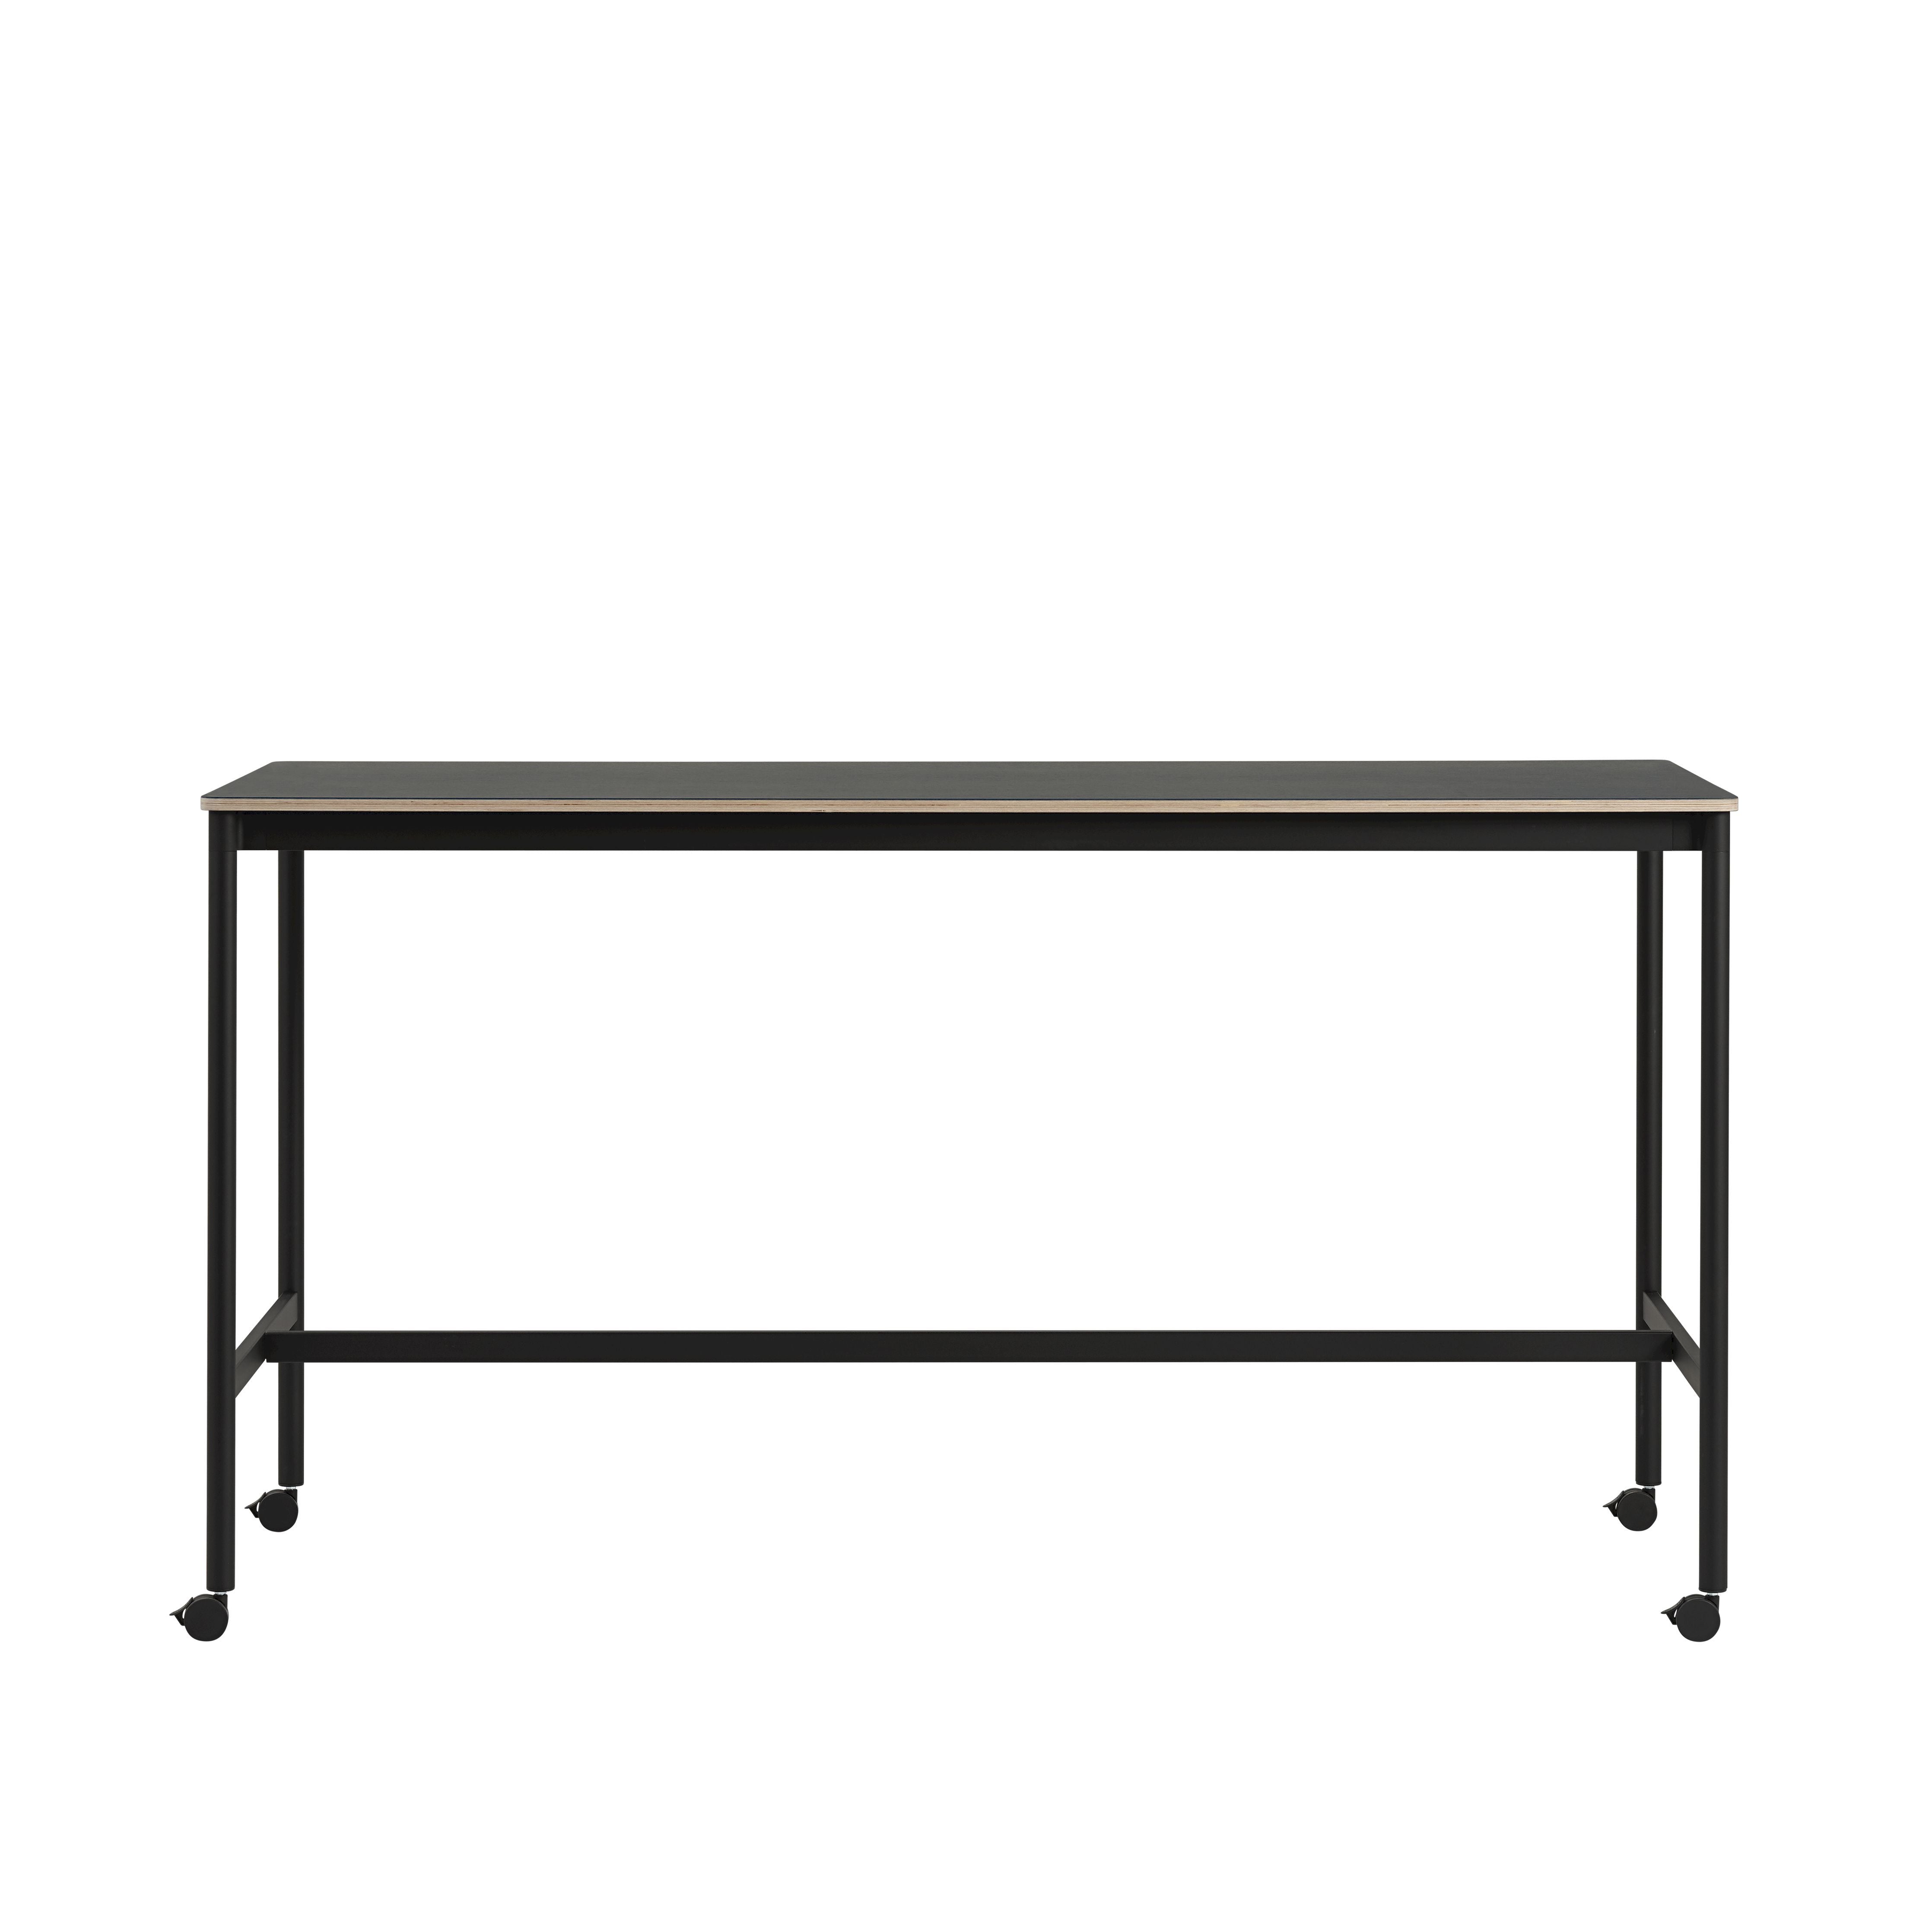 Muuto Base High Table M. Rolls 190x85x105 cm, nanolaminato nero/compensato nero